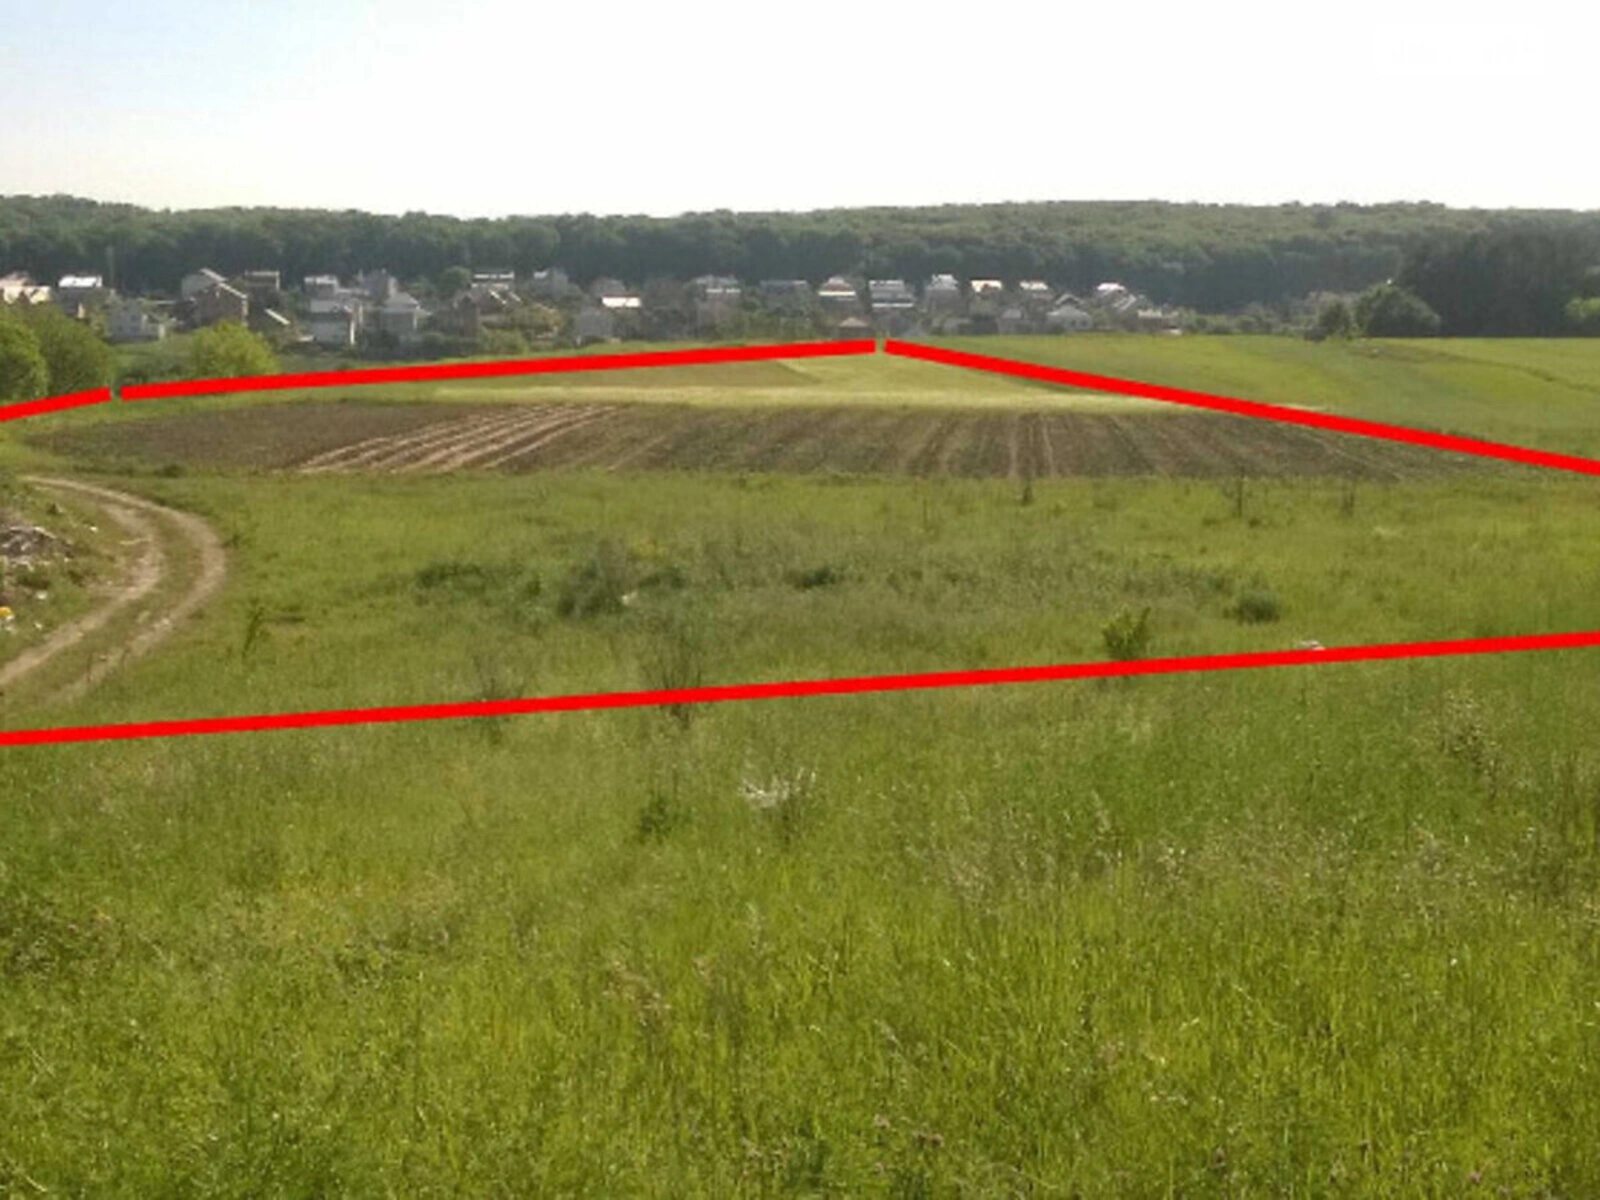 Land for sale for residential construction. Podhorodnoe. 